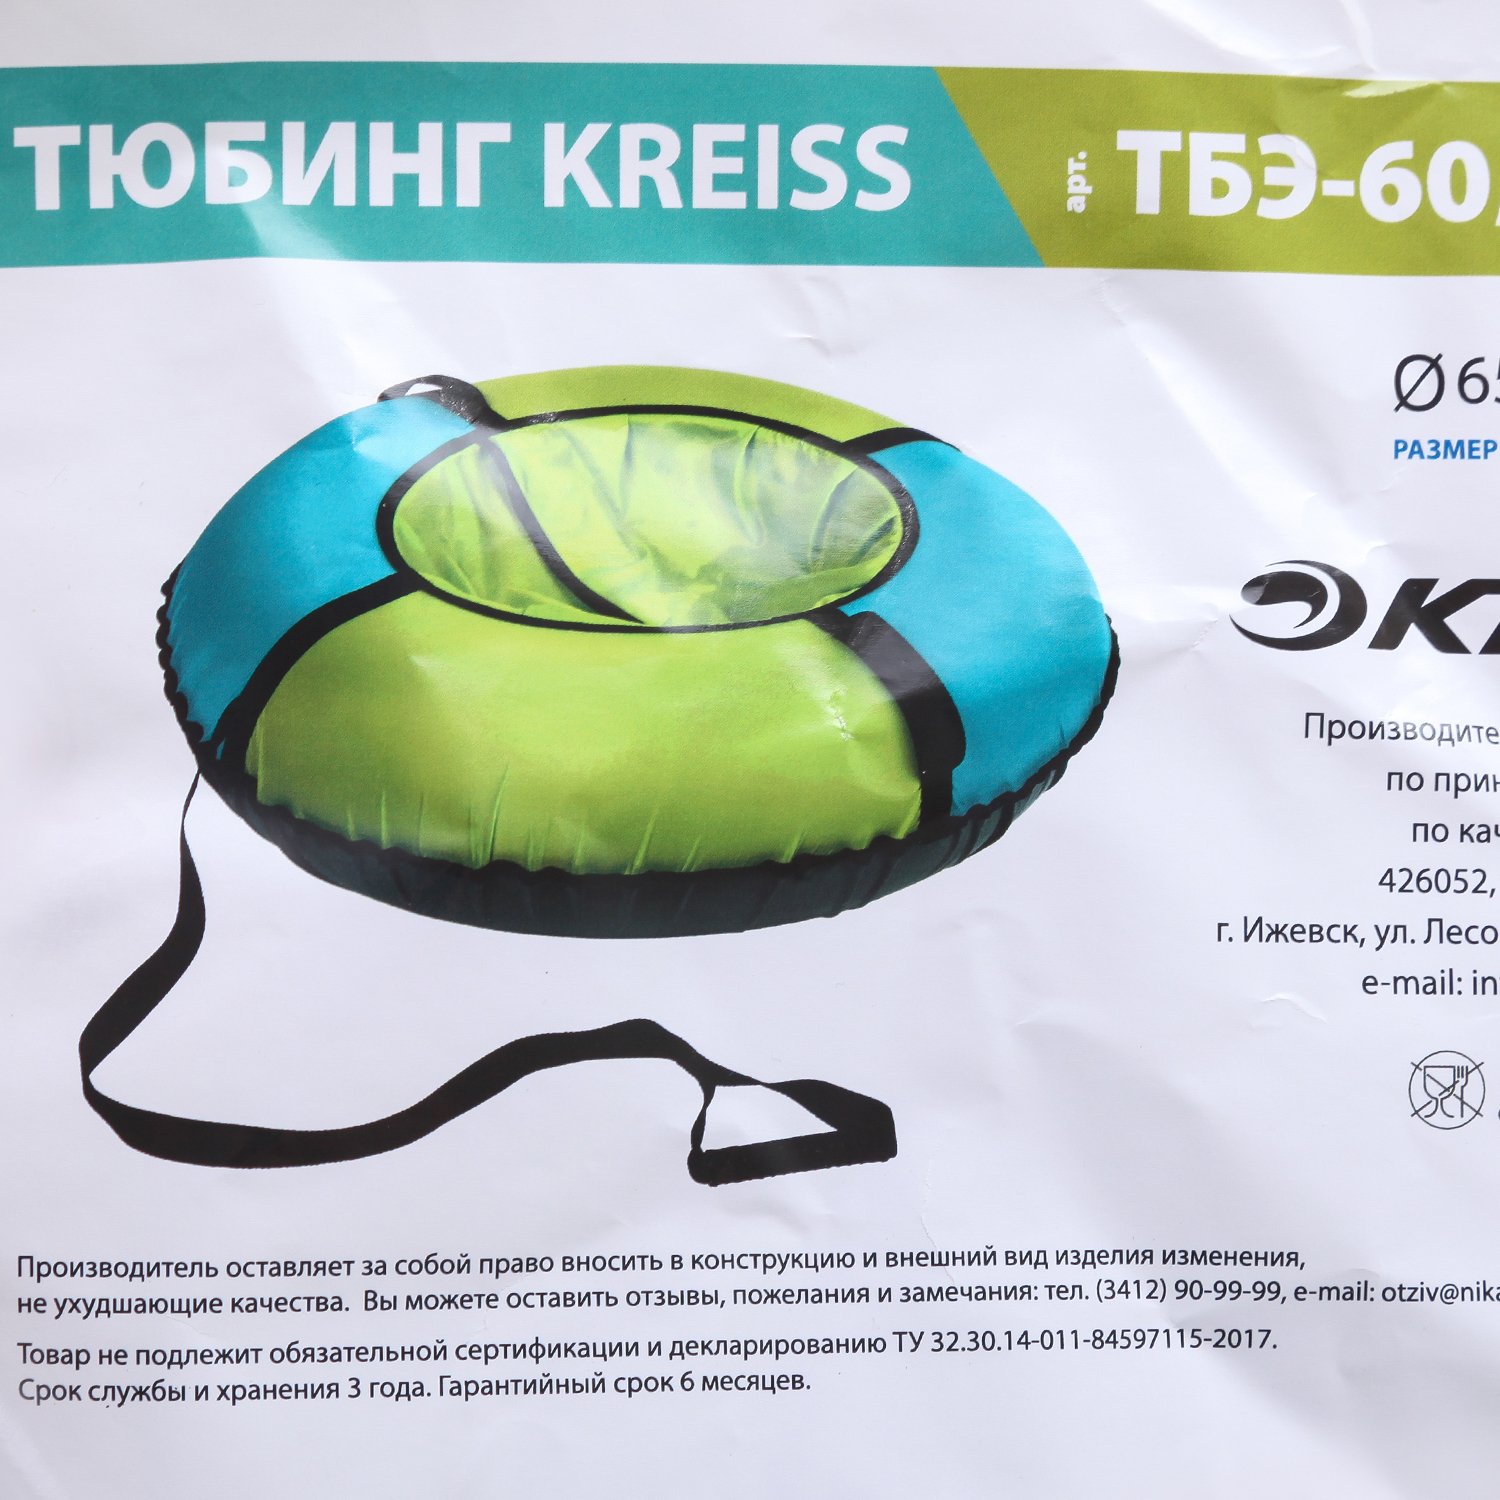 Тюбинг Kreiss Лимонный-Бирюзовый ТБЭ-60/Б  по цене 669 ₽ в .